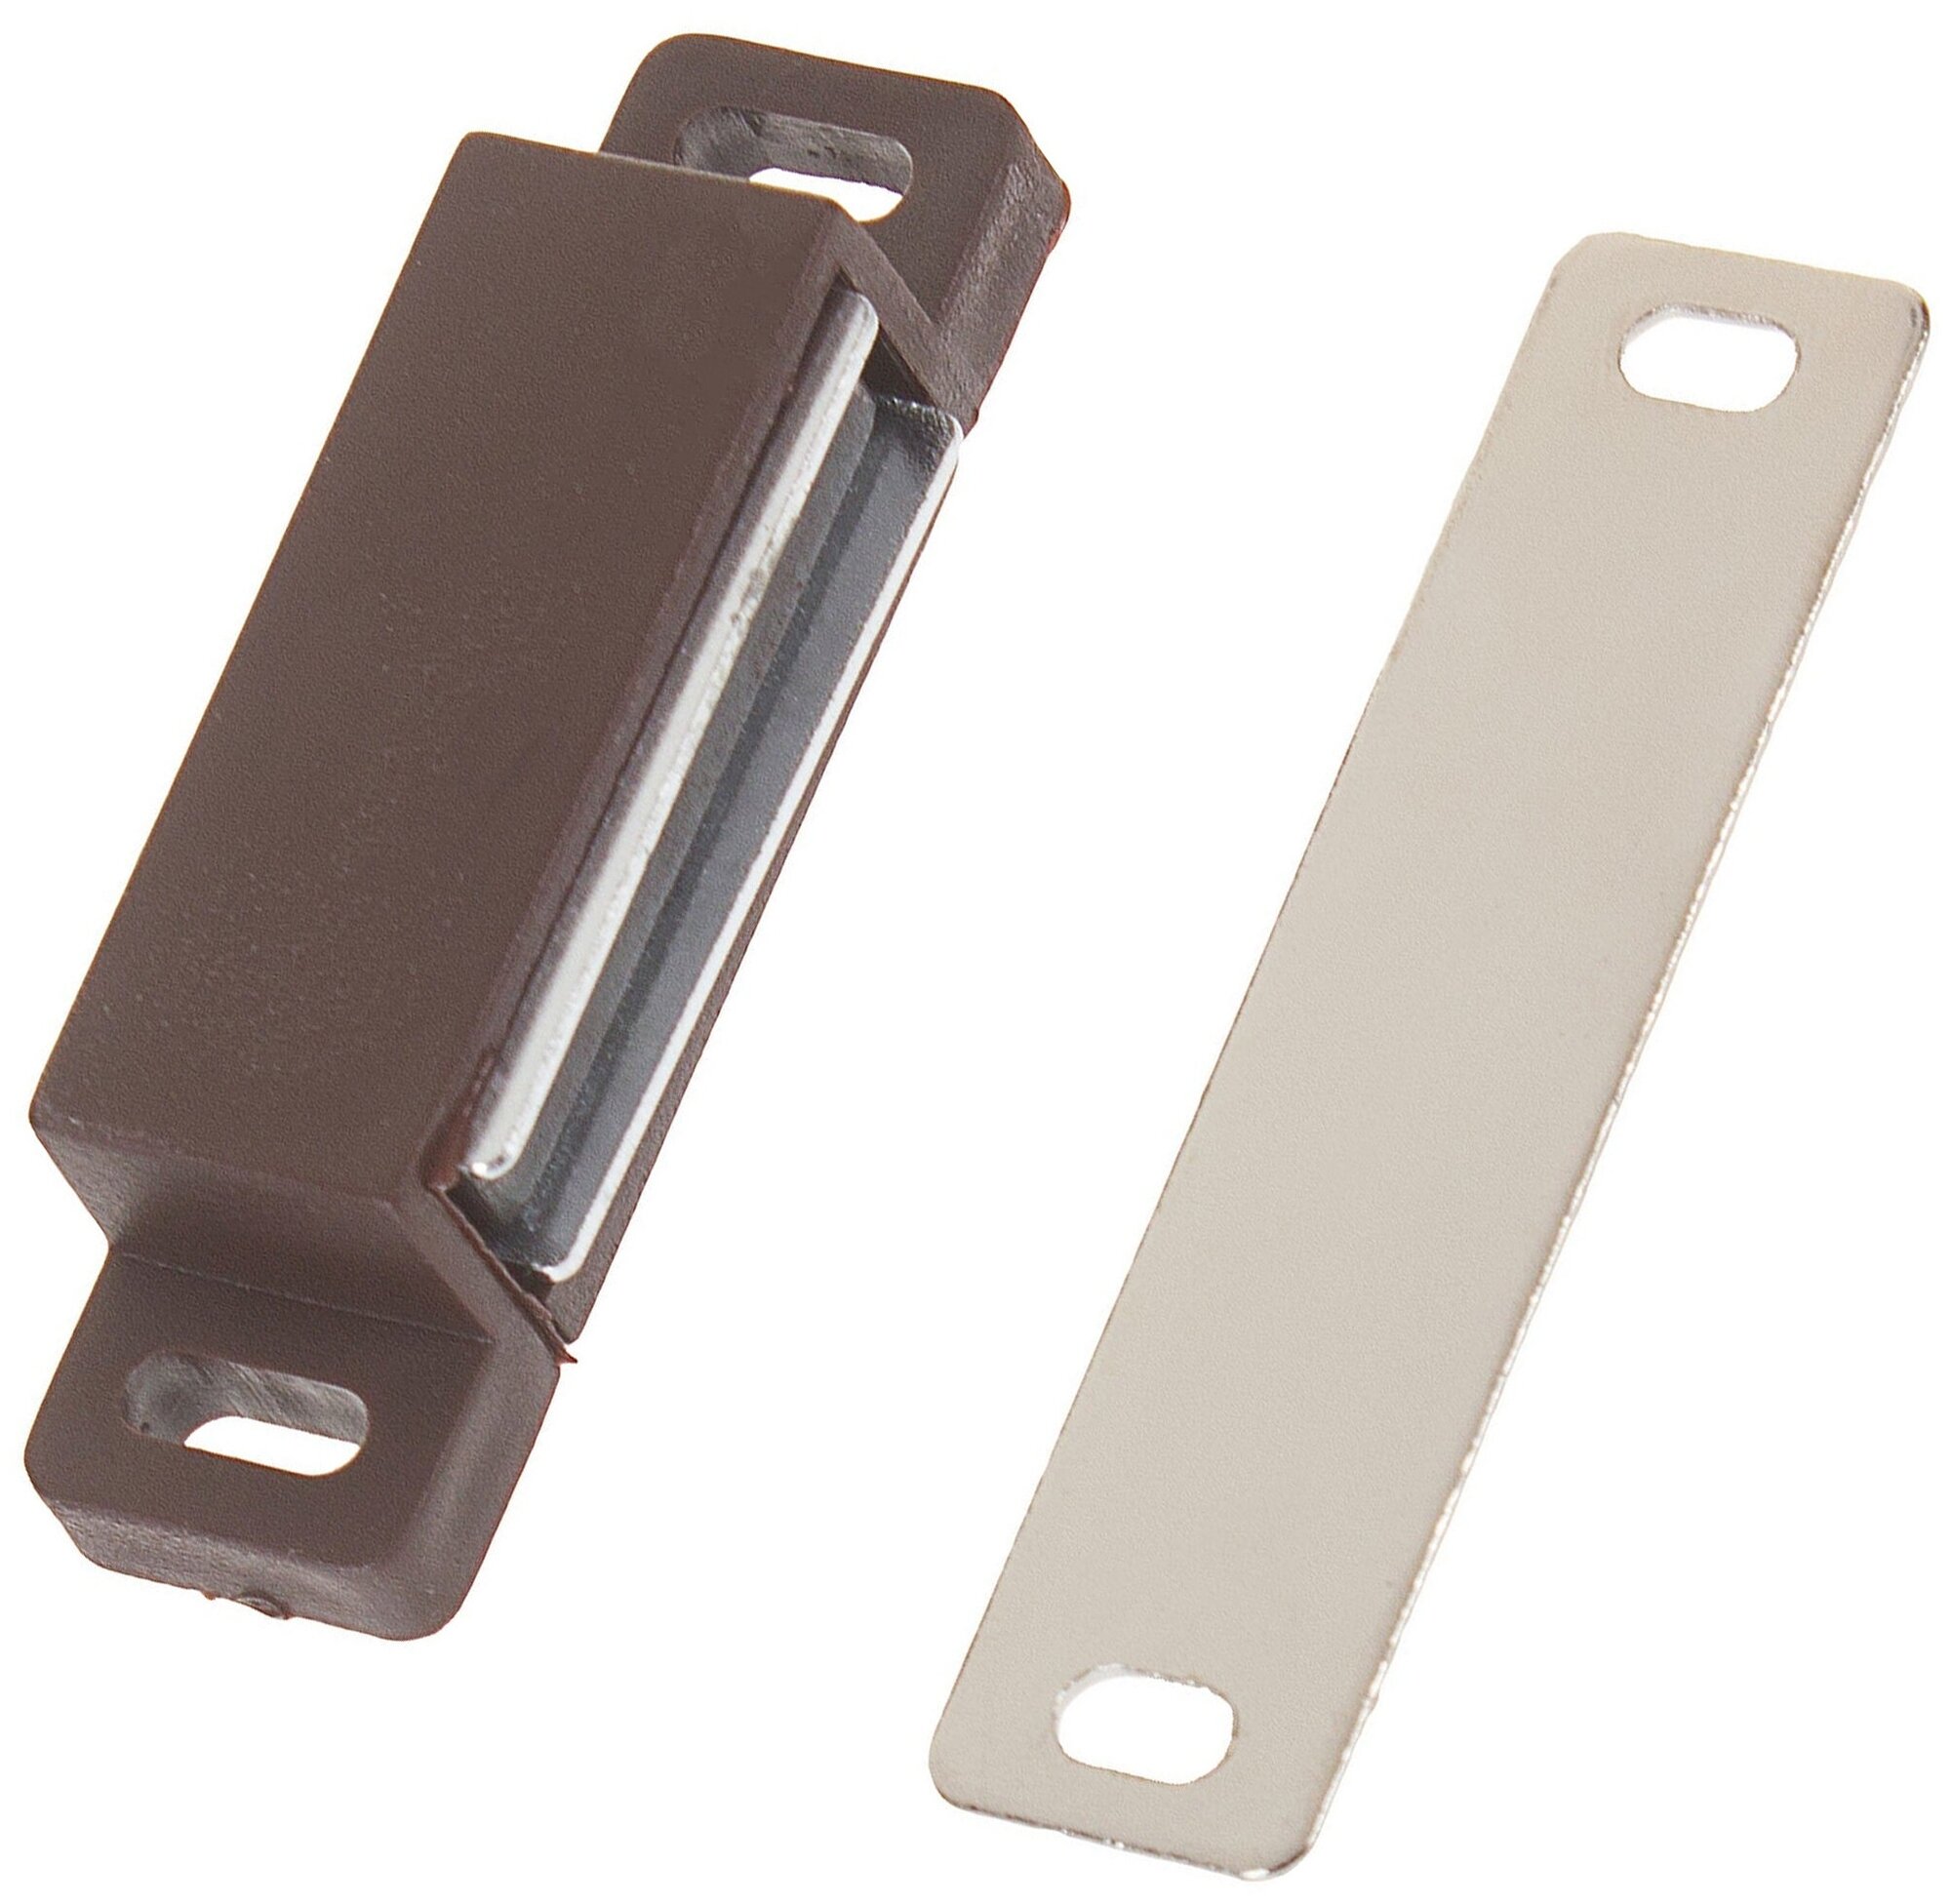 Защёлка магнитная 58х15 мм: изделие из пластика для прочной фиксации дверок тумбочек и шкафов; цвет коричневый; держит створку в закрытом положении